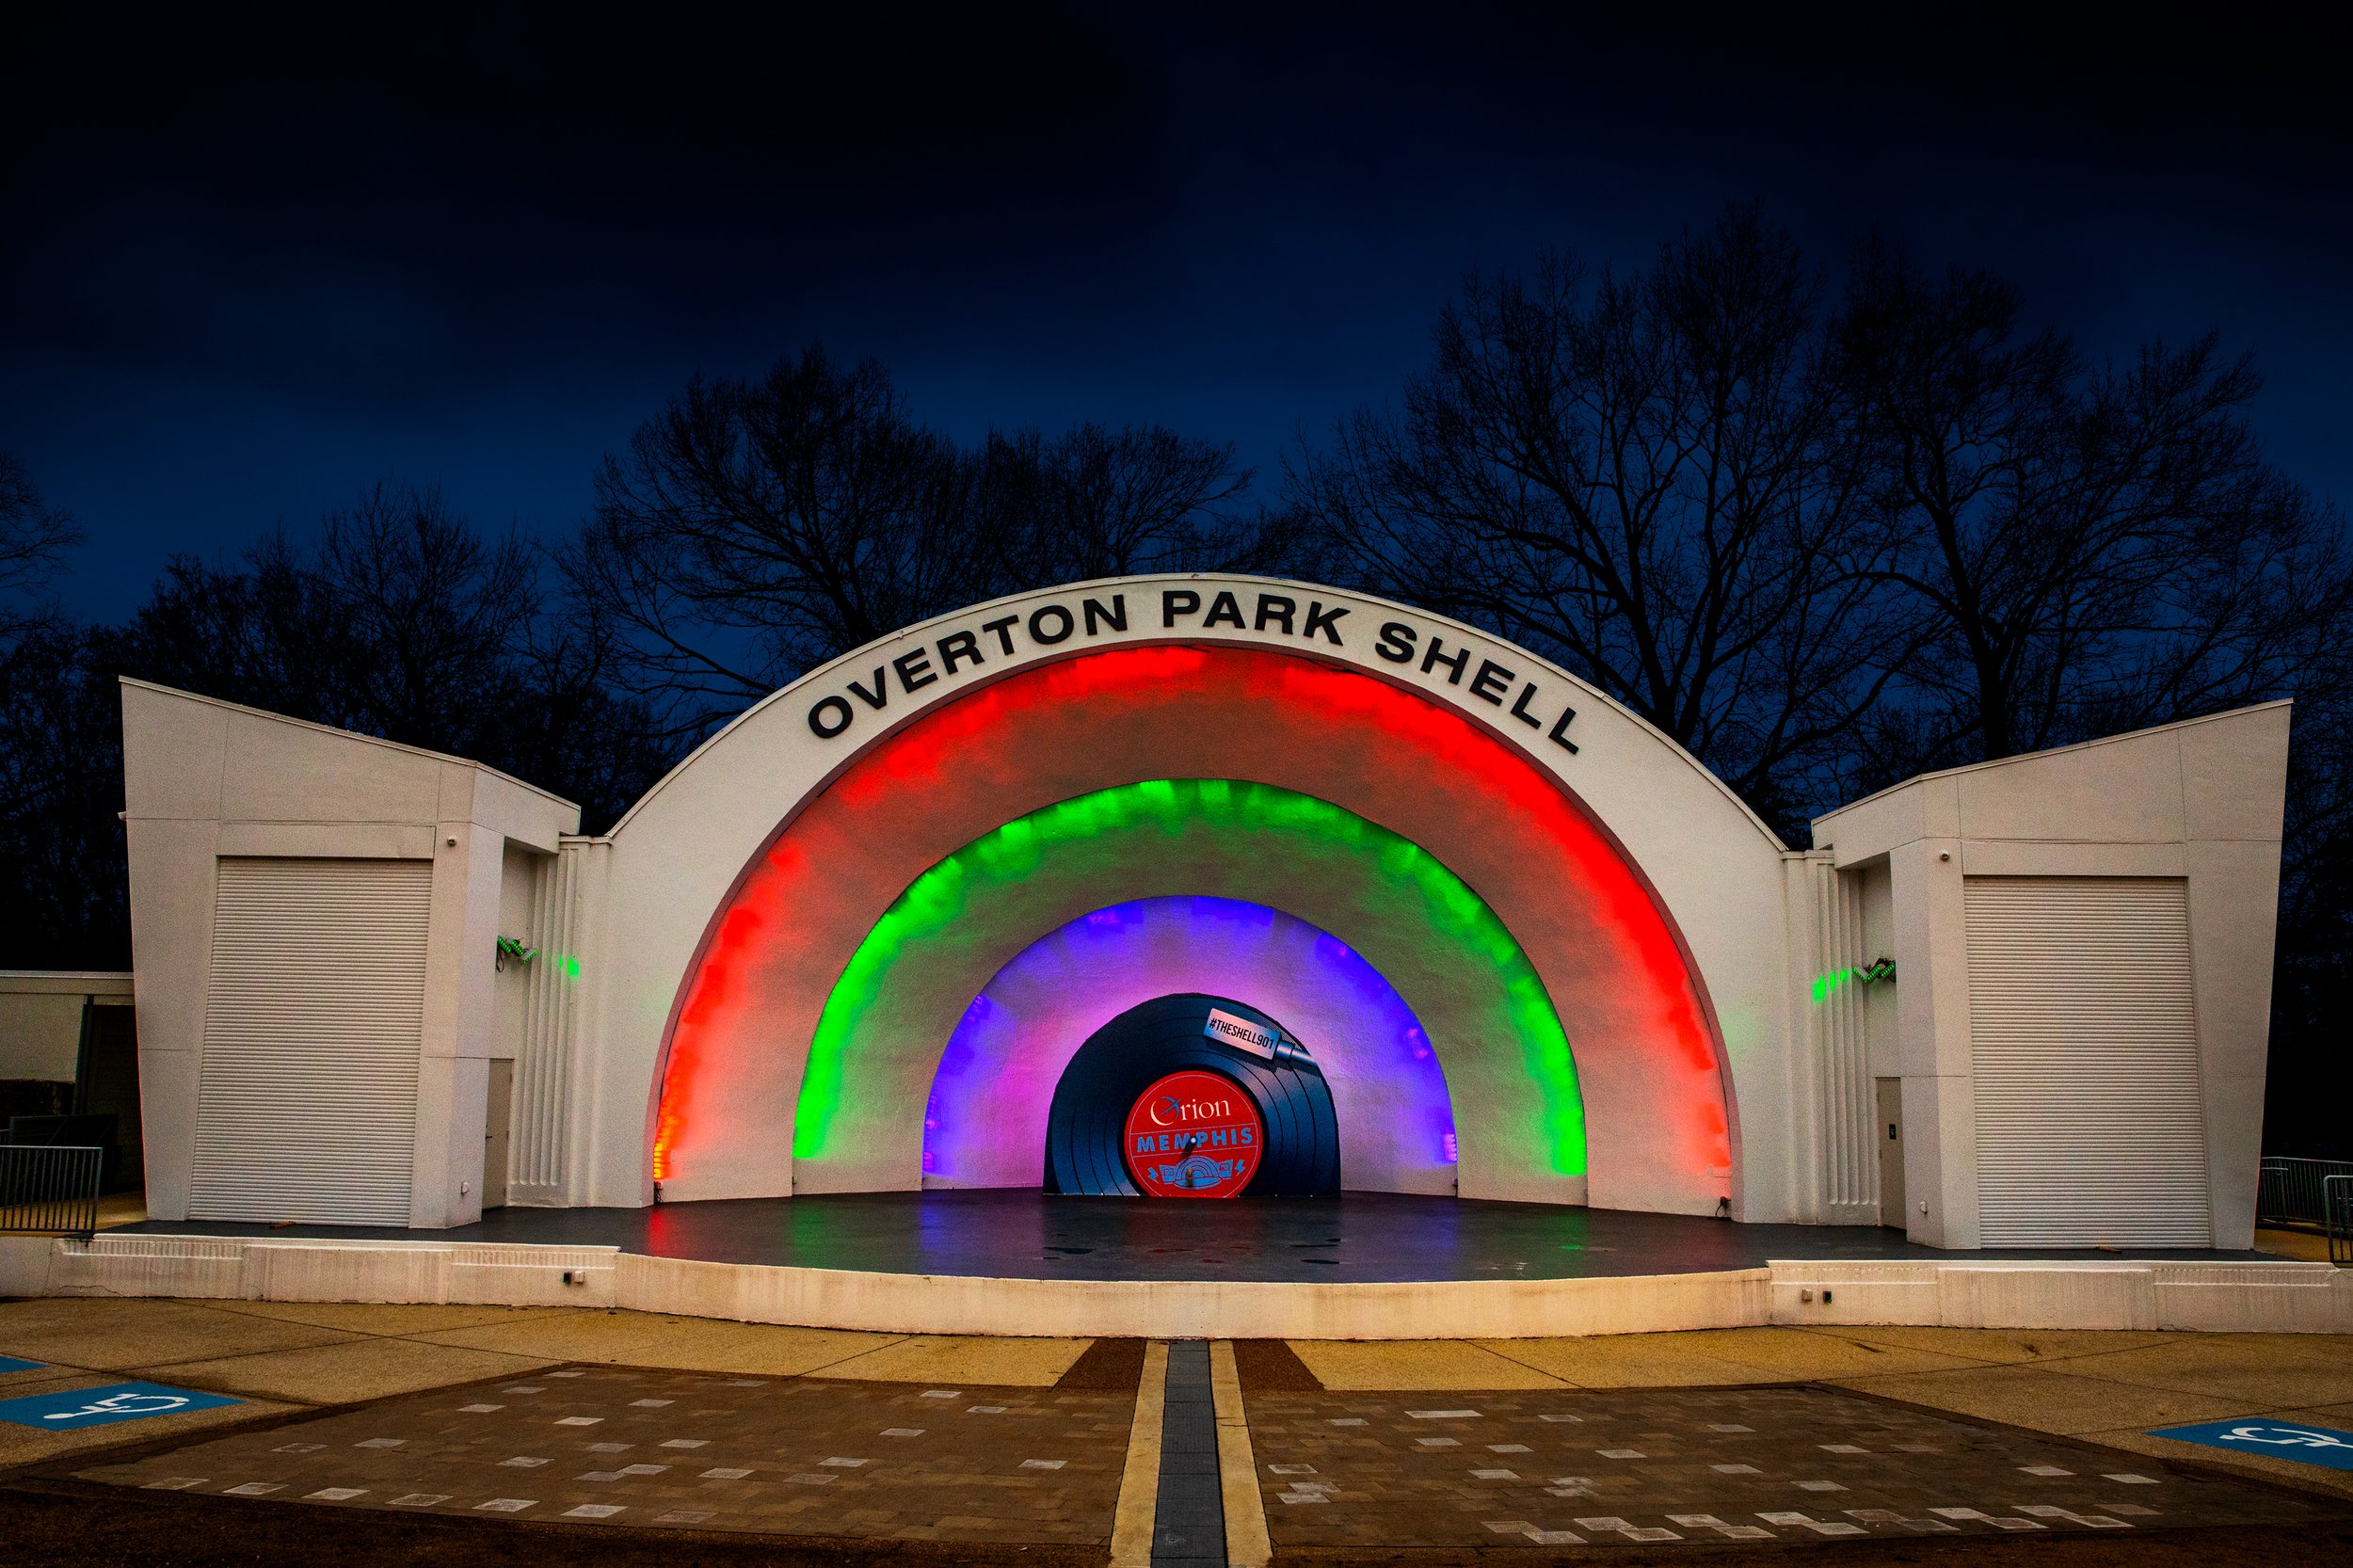 Venue Profile: Overton Park Shell